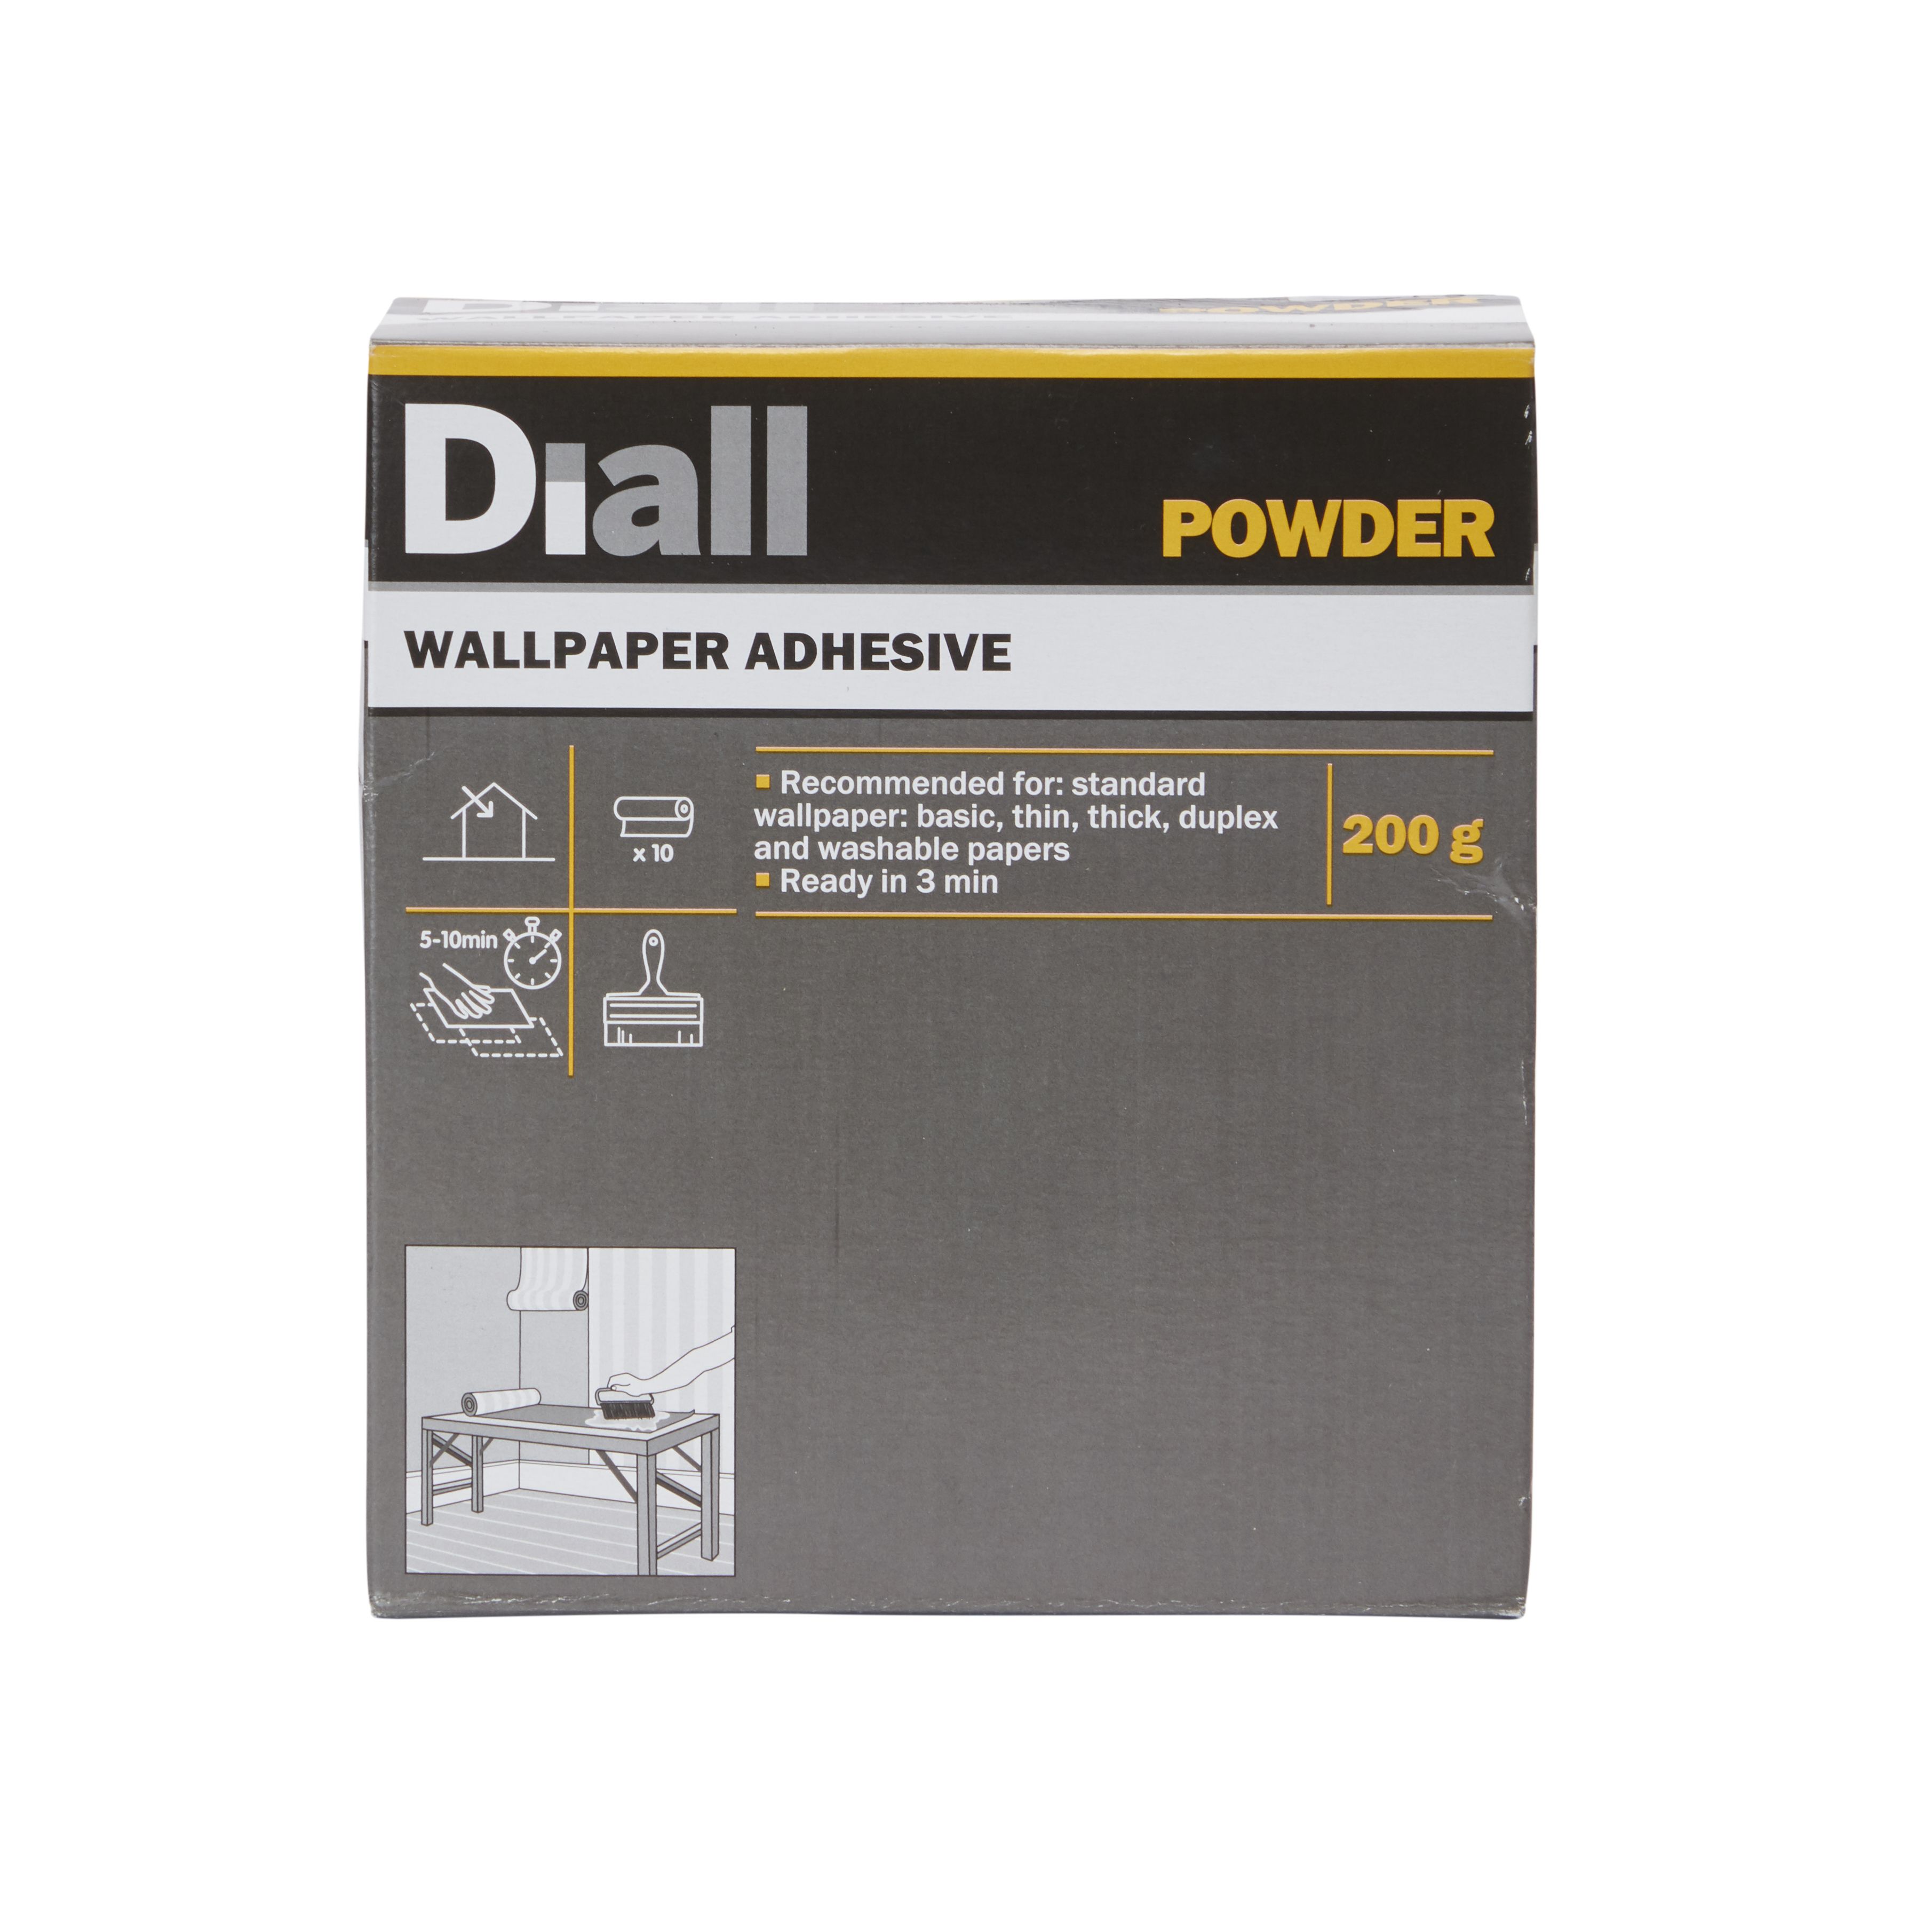 Diall Powder Wallpaper Adhesive 200g